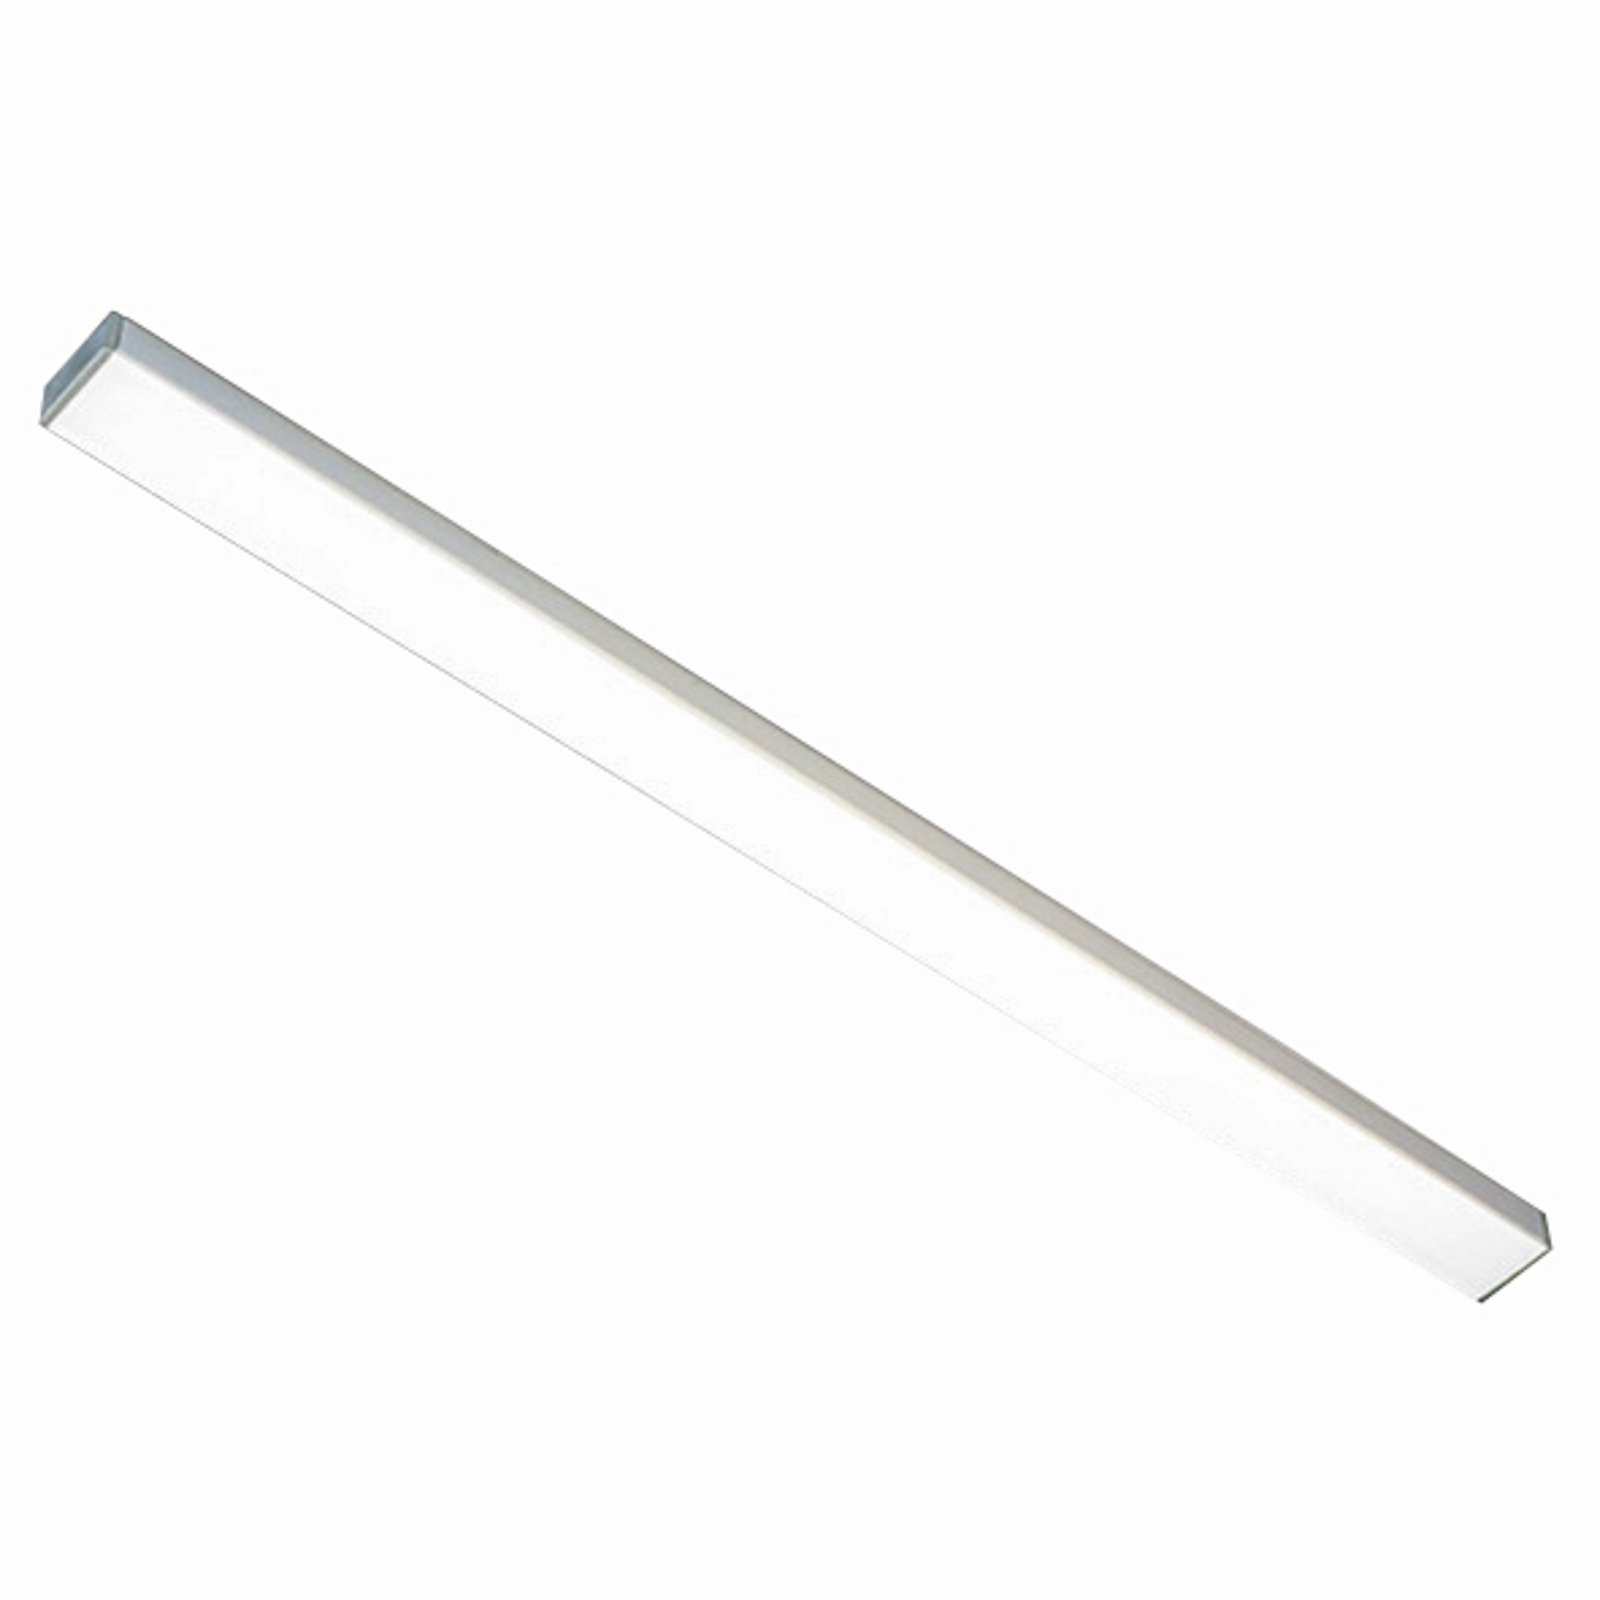 Top-Stick FMK LED under-cabinet light 3,000K, 60cm